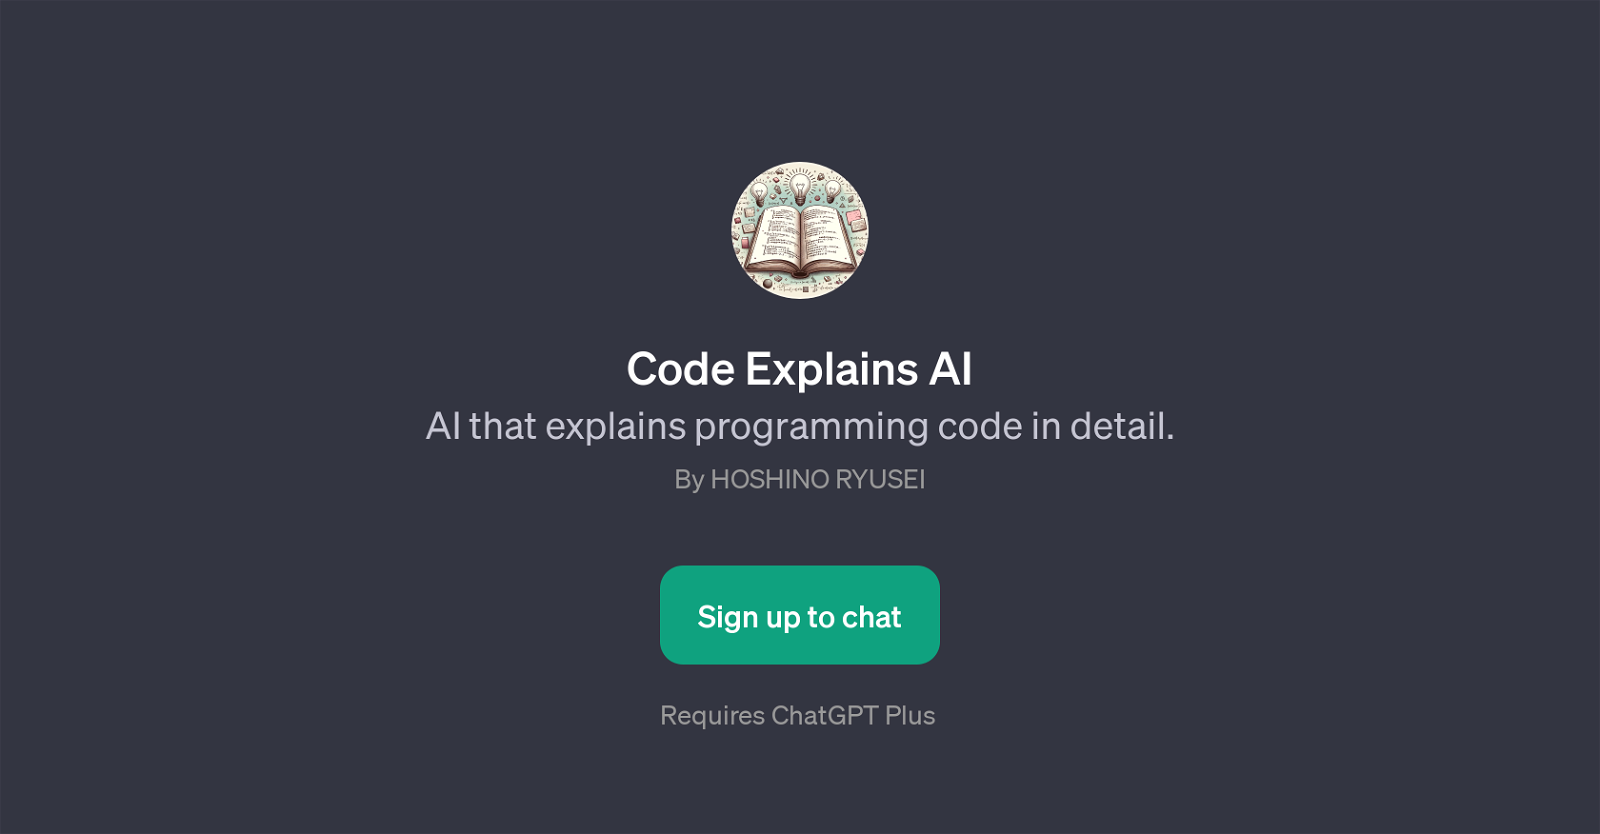 Code Explains AI website